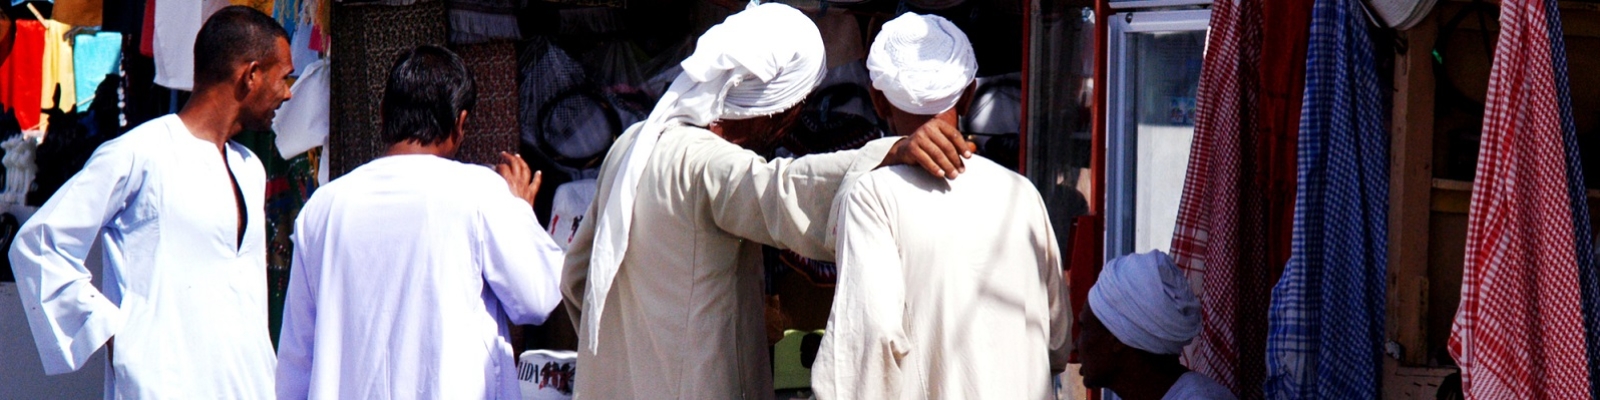 Белоснежная одежда пророка. Белый одеяния в Хадже.